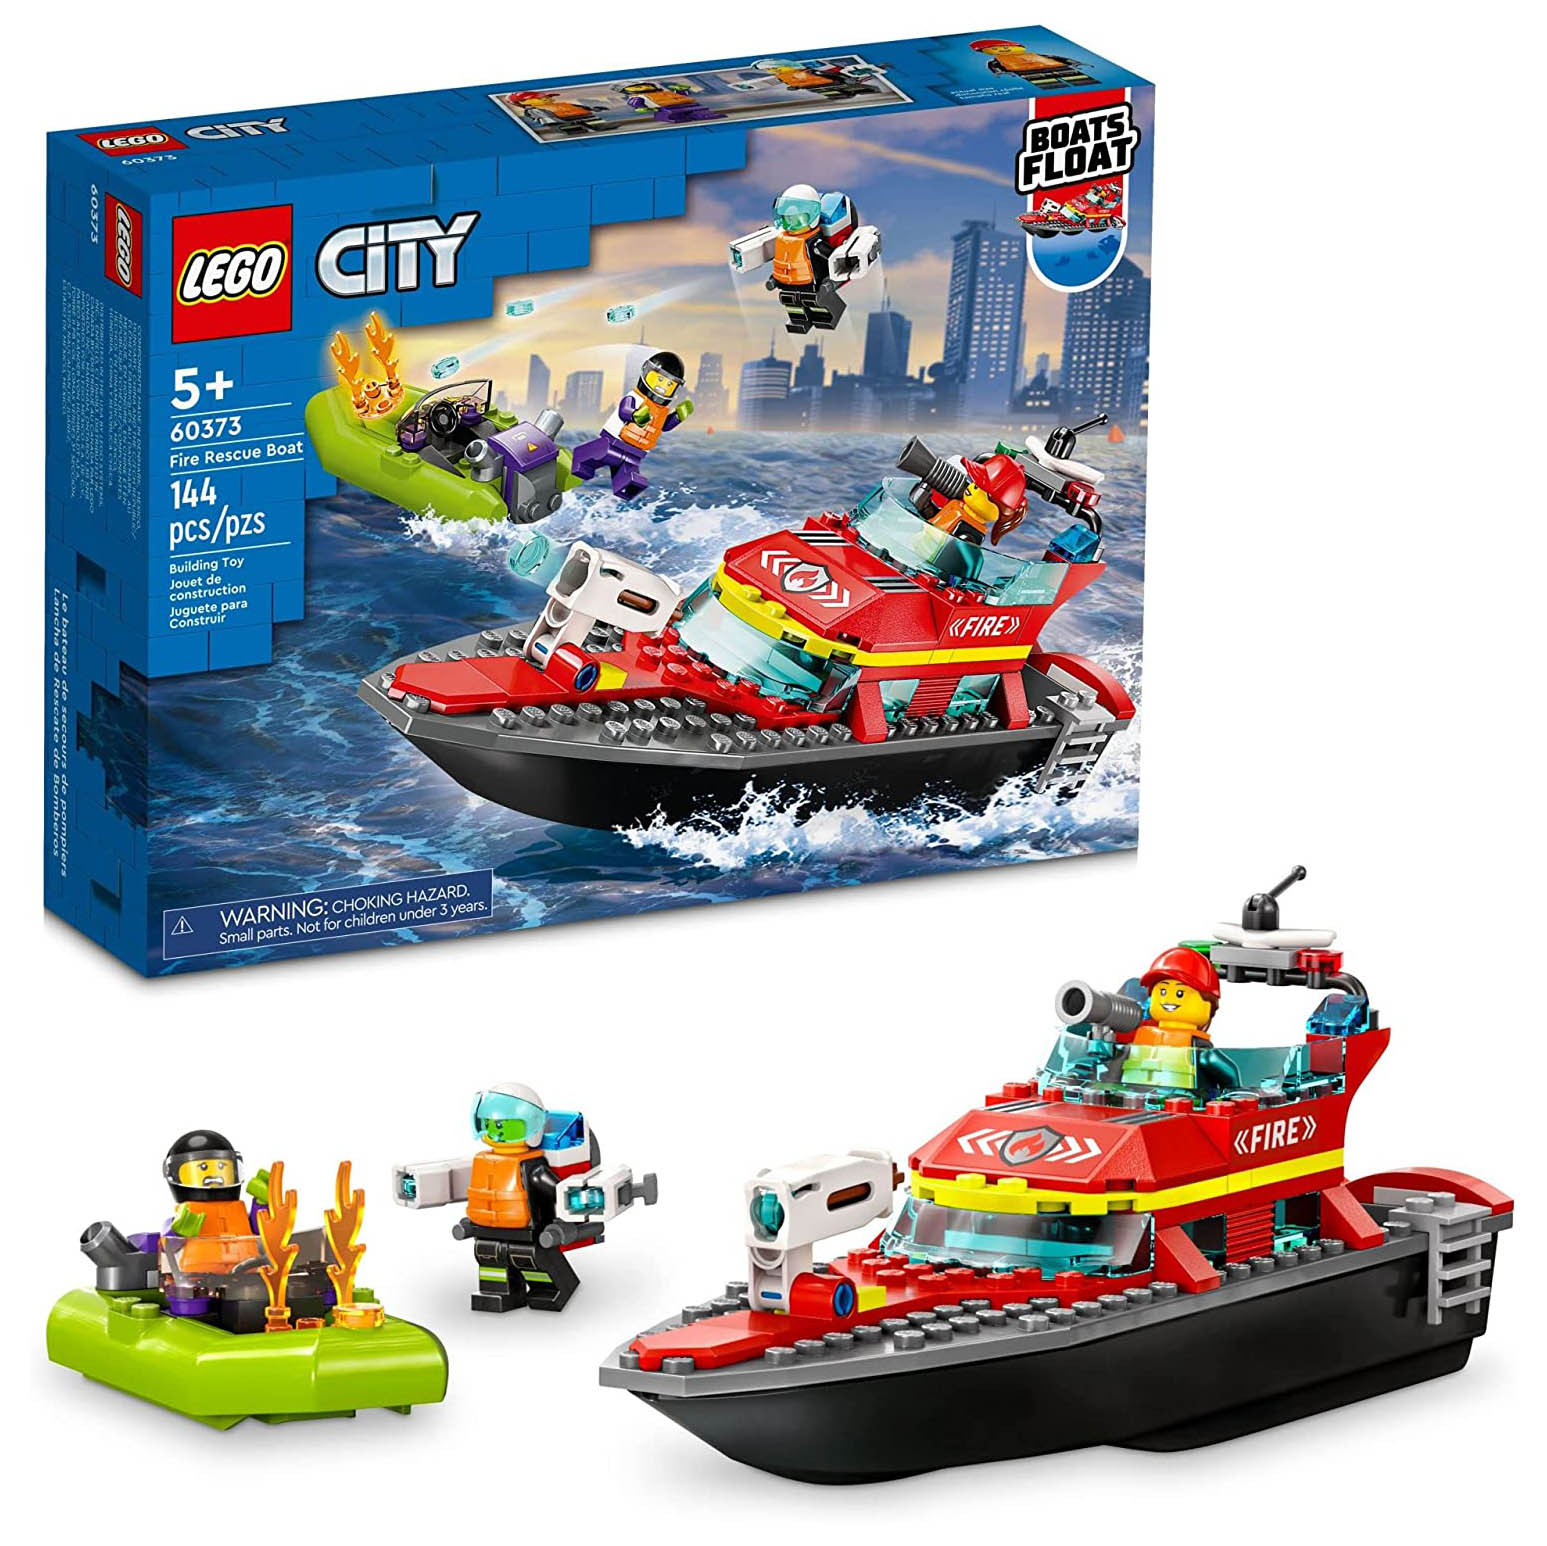 Конструктор LEGO City Пожарная спасательная лодка, 144 детали, 60373 конструктор lego city fire пожарный квадроцикл 60105